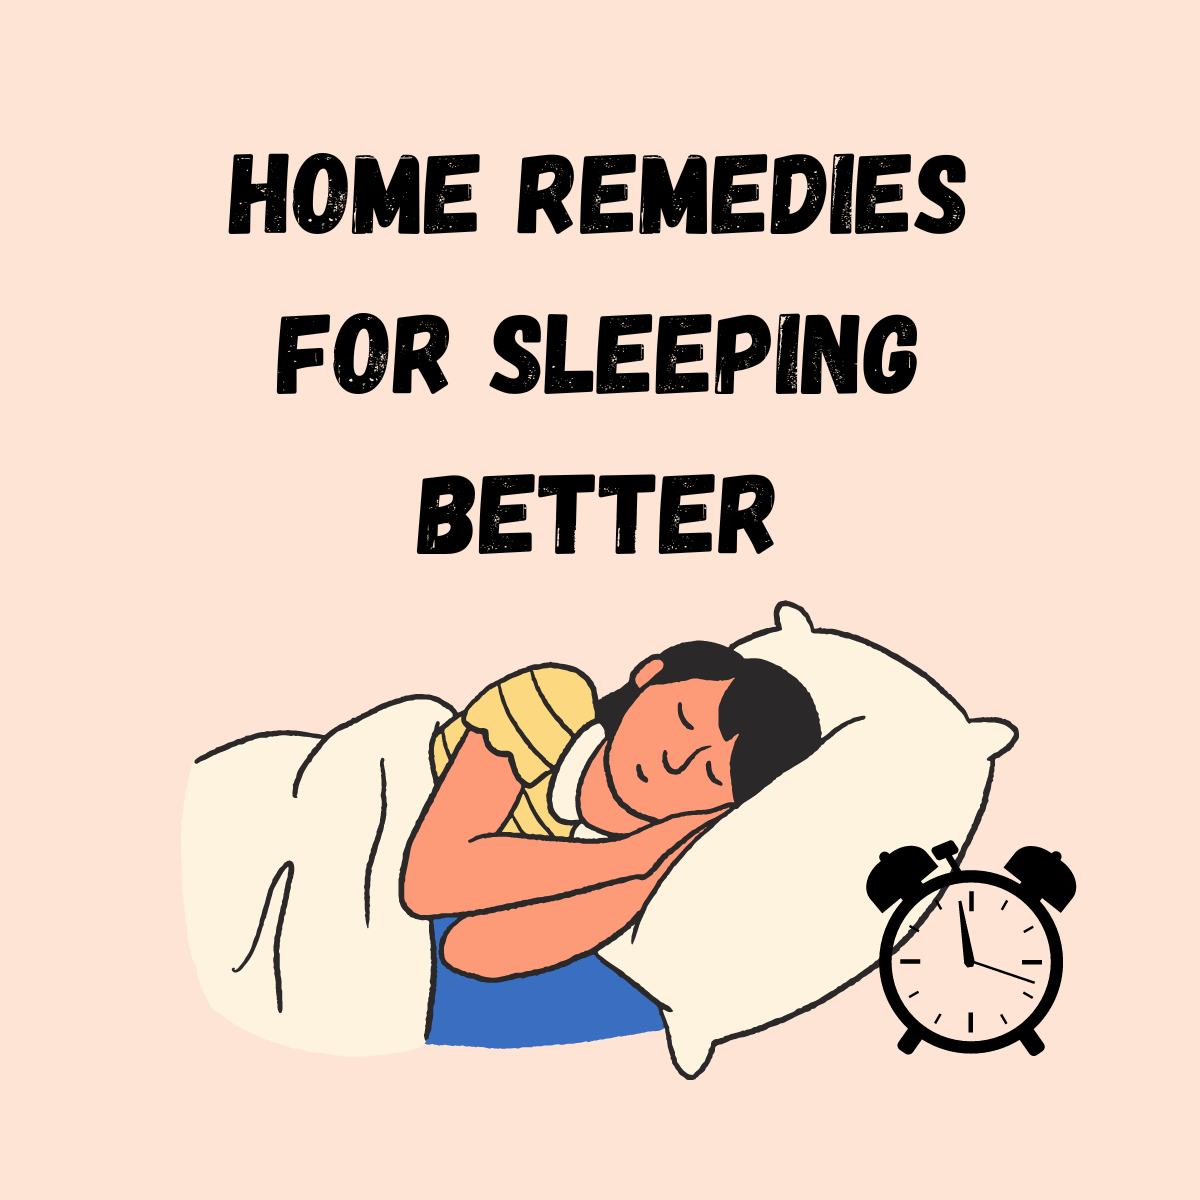 How To Fall asleep better at home - sleep better